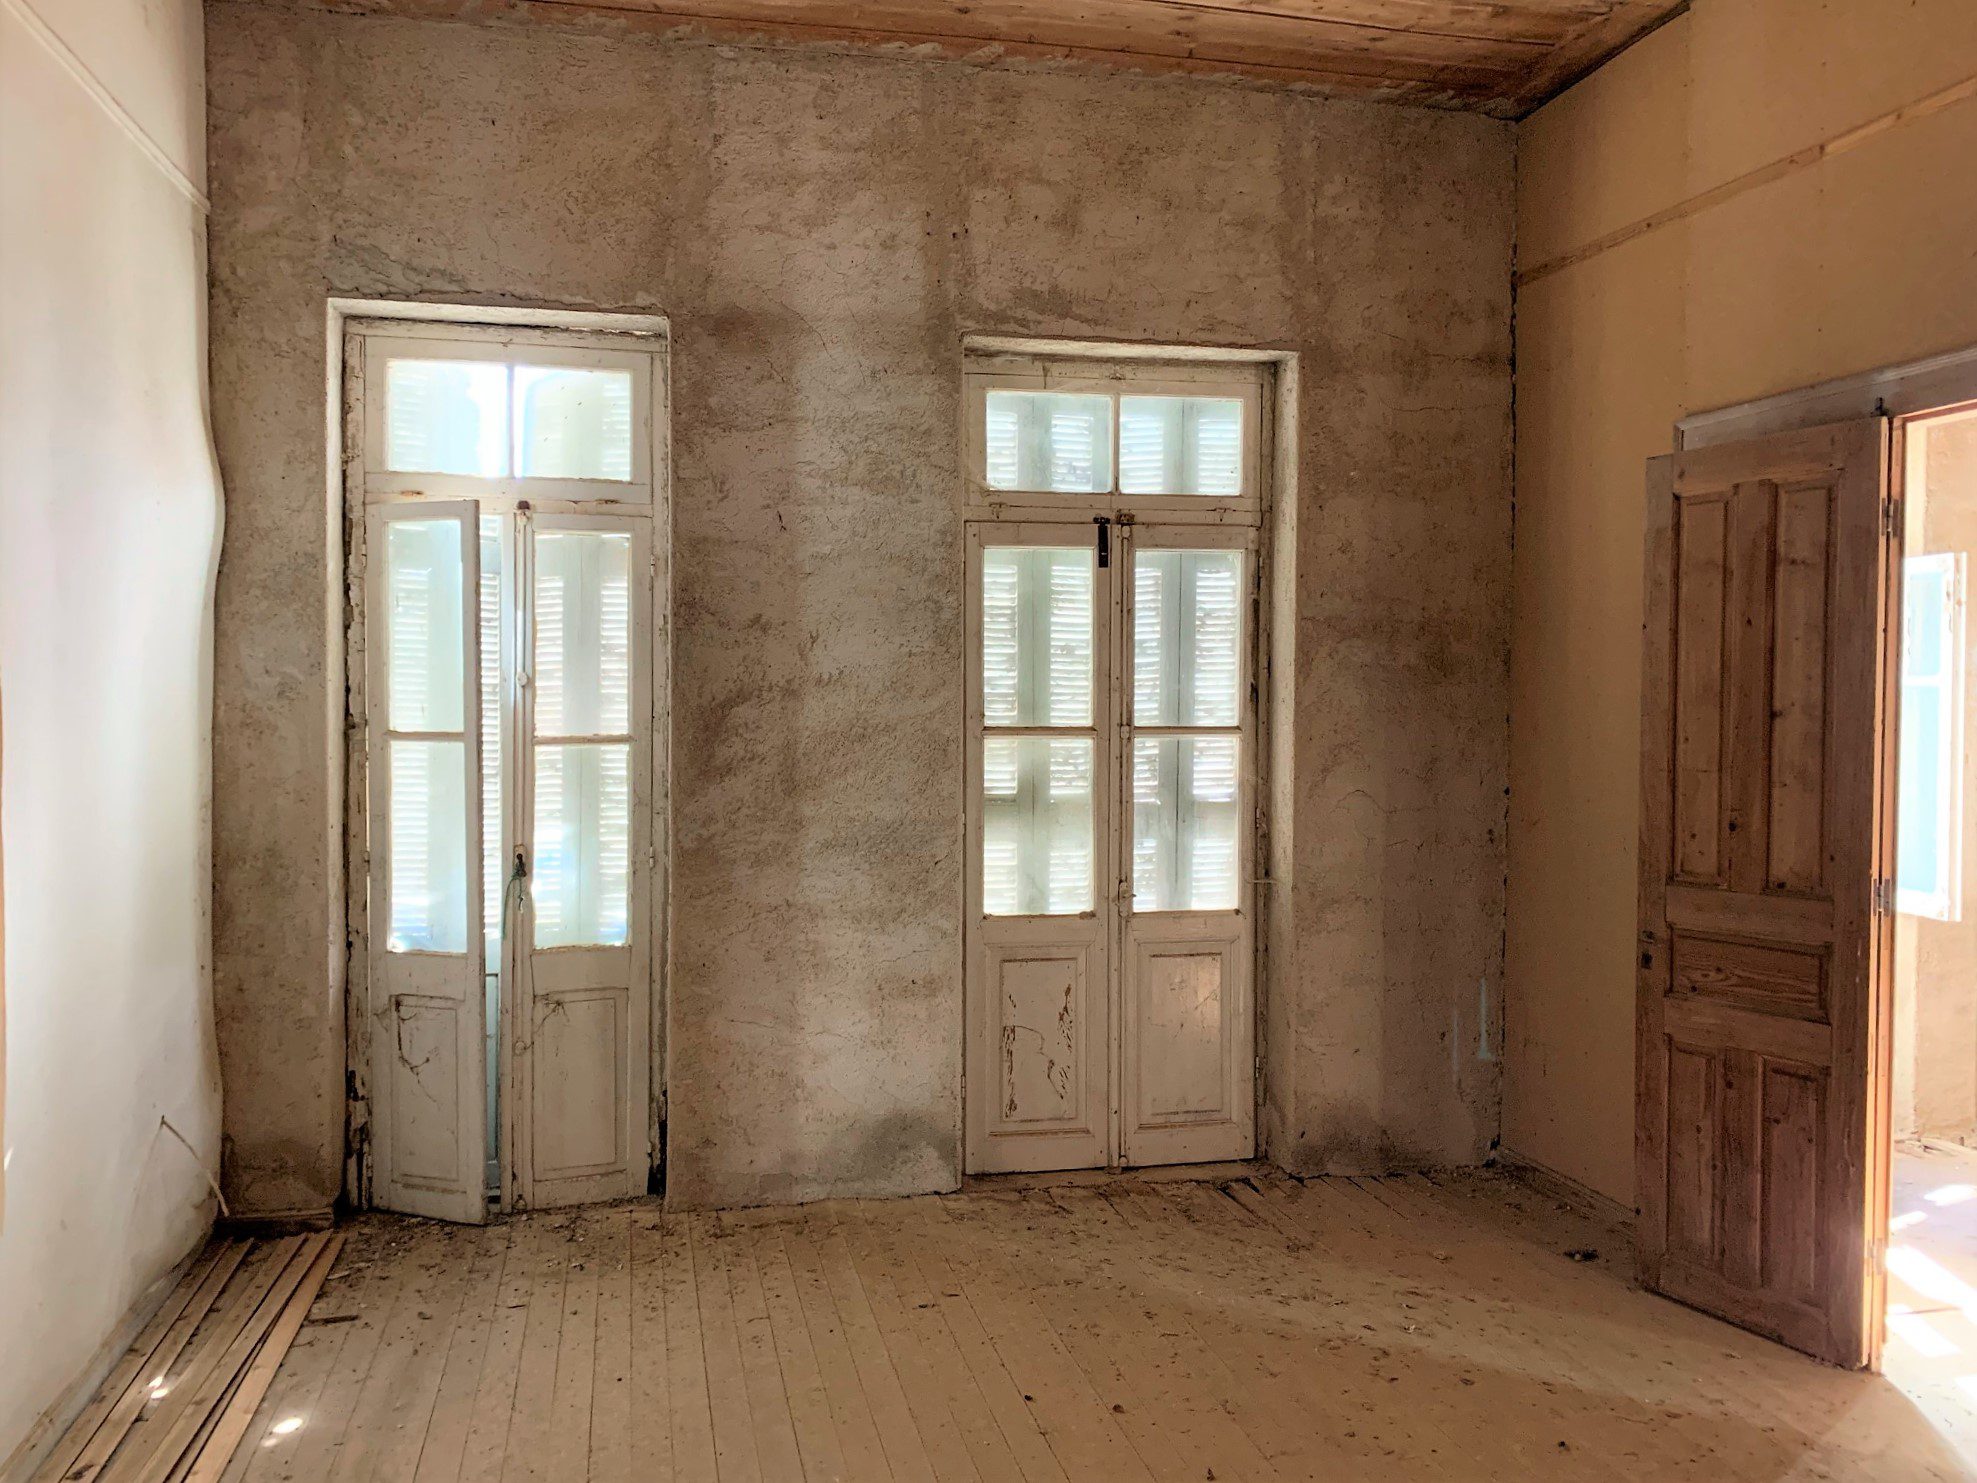 εσωτερικός χώρος κατοικίας προς πώληση στην Ιθάκη Ελλάδας Ανώγη